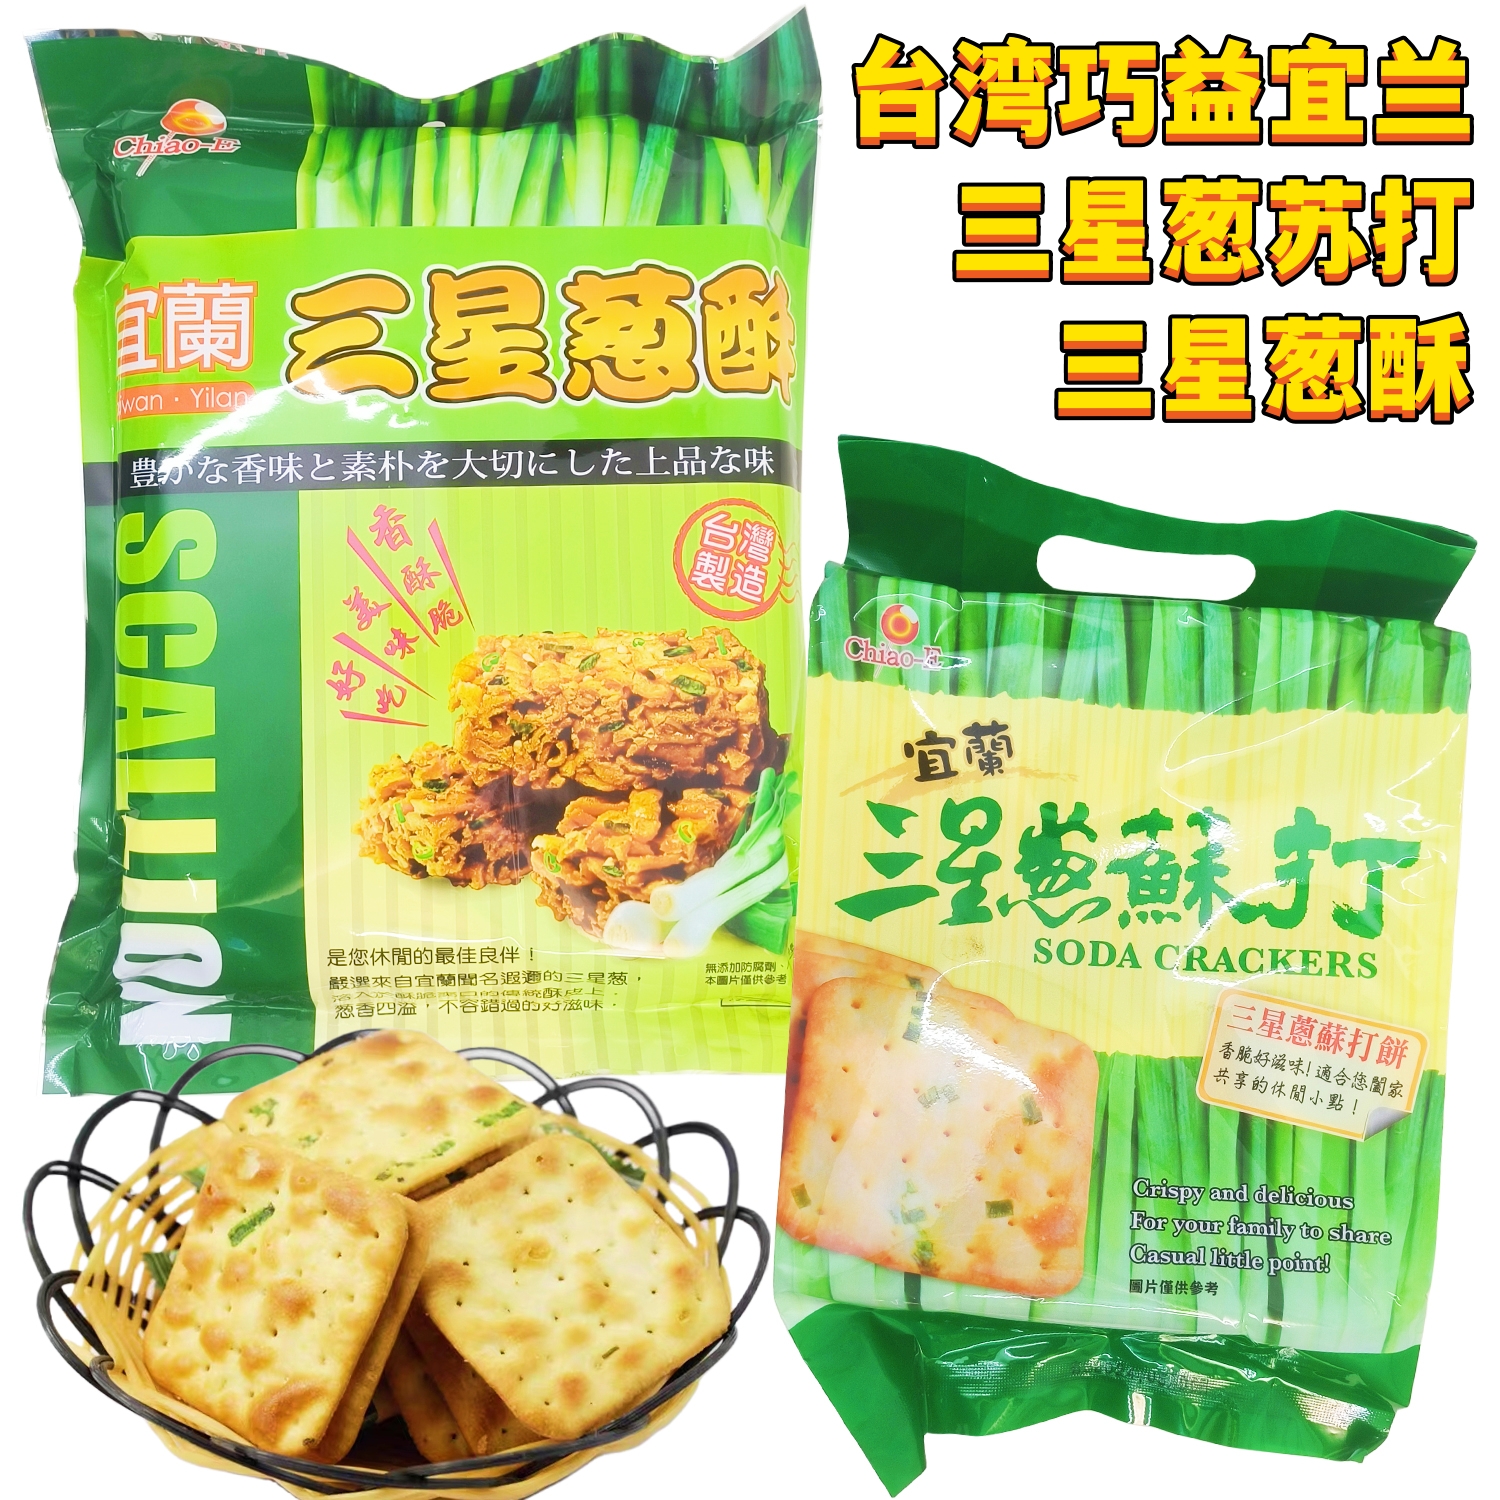 包邮出售台湾进口巧益宜兰三星葱苏打饼三星葱酥两款酥脆经典零食